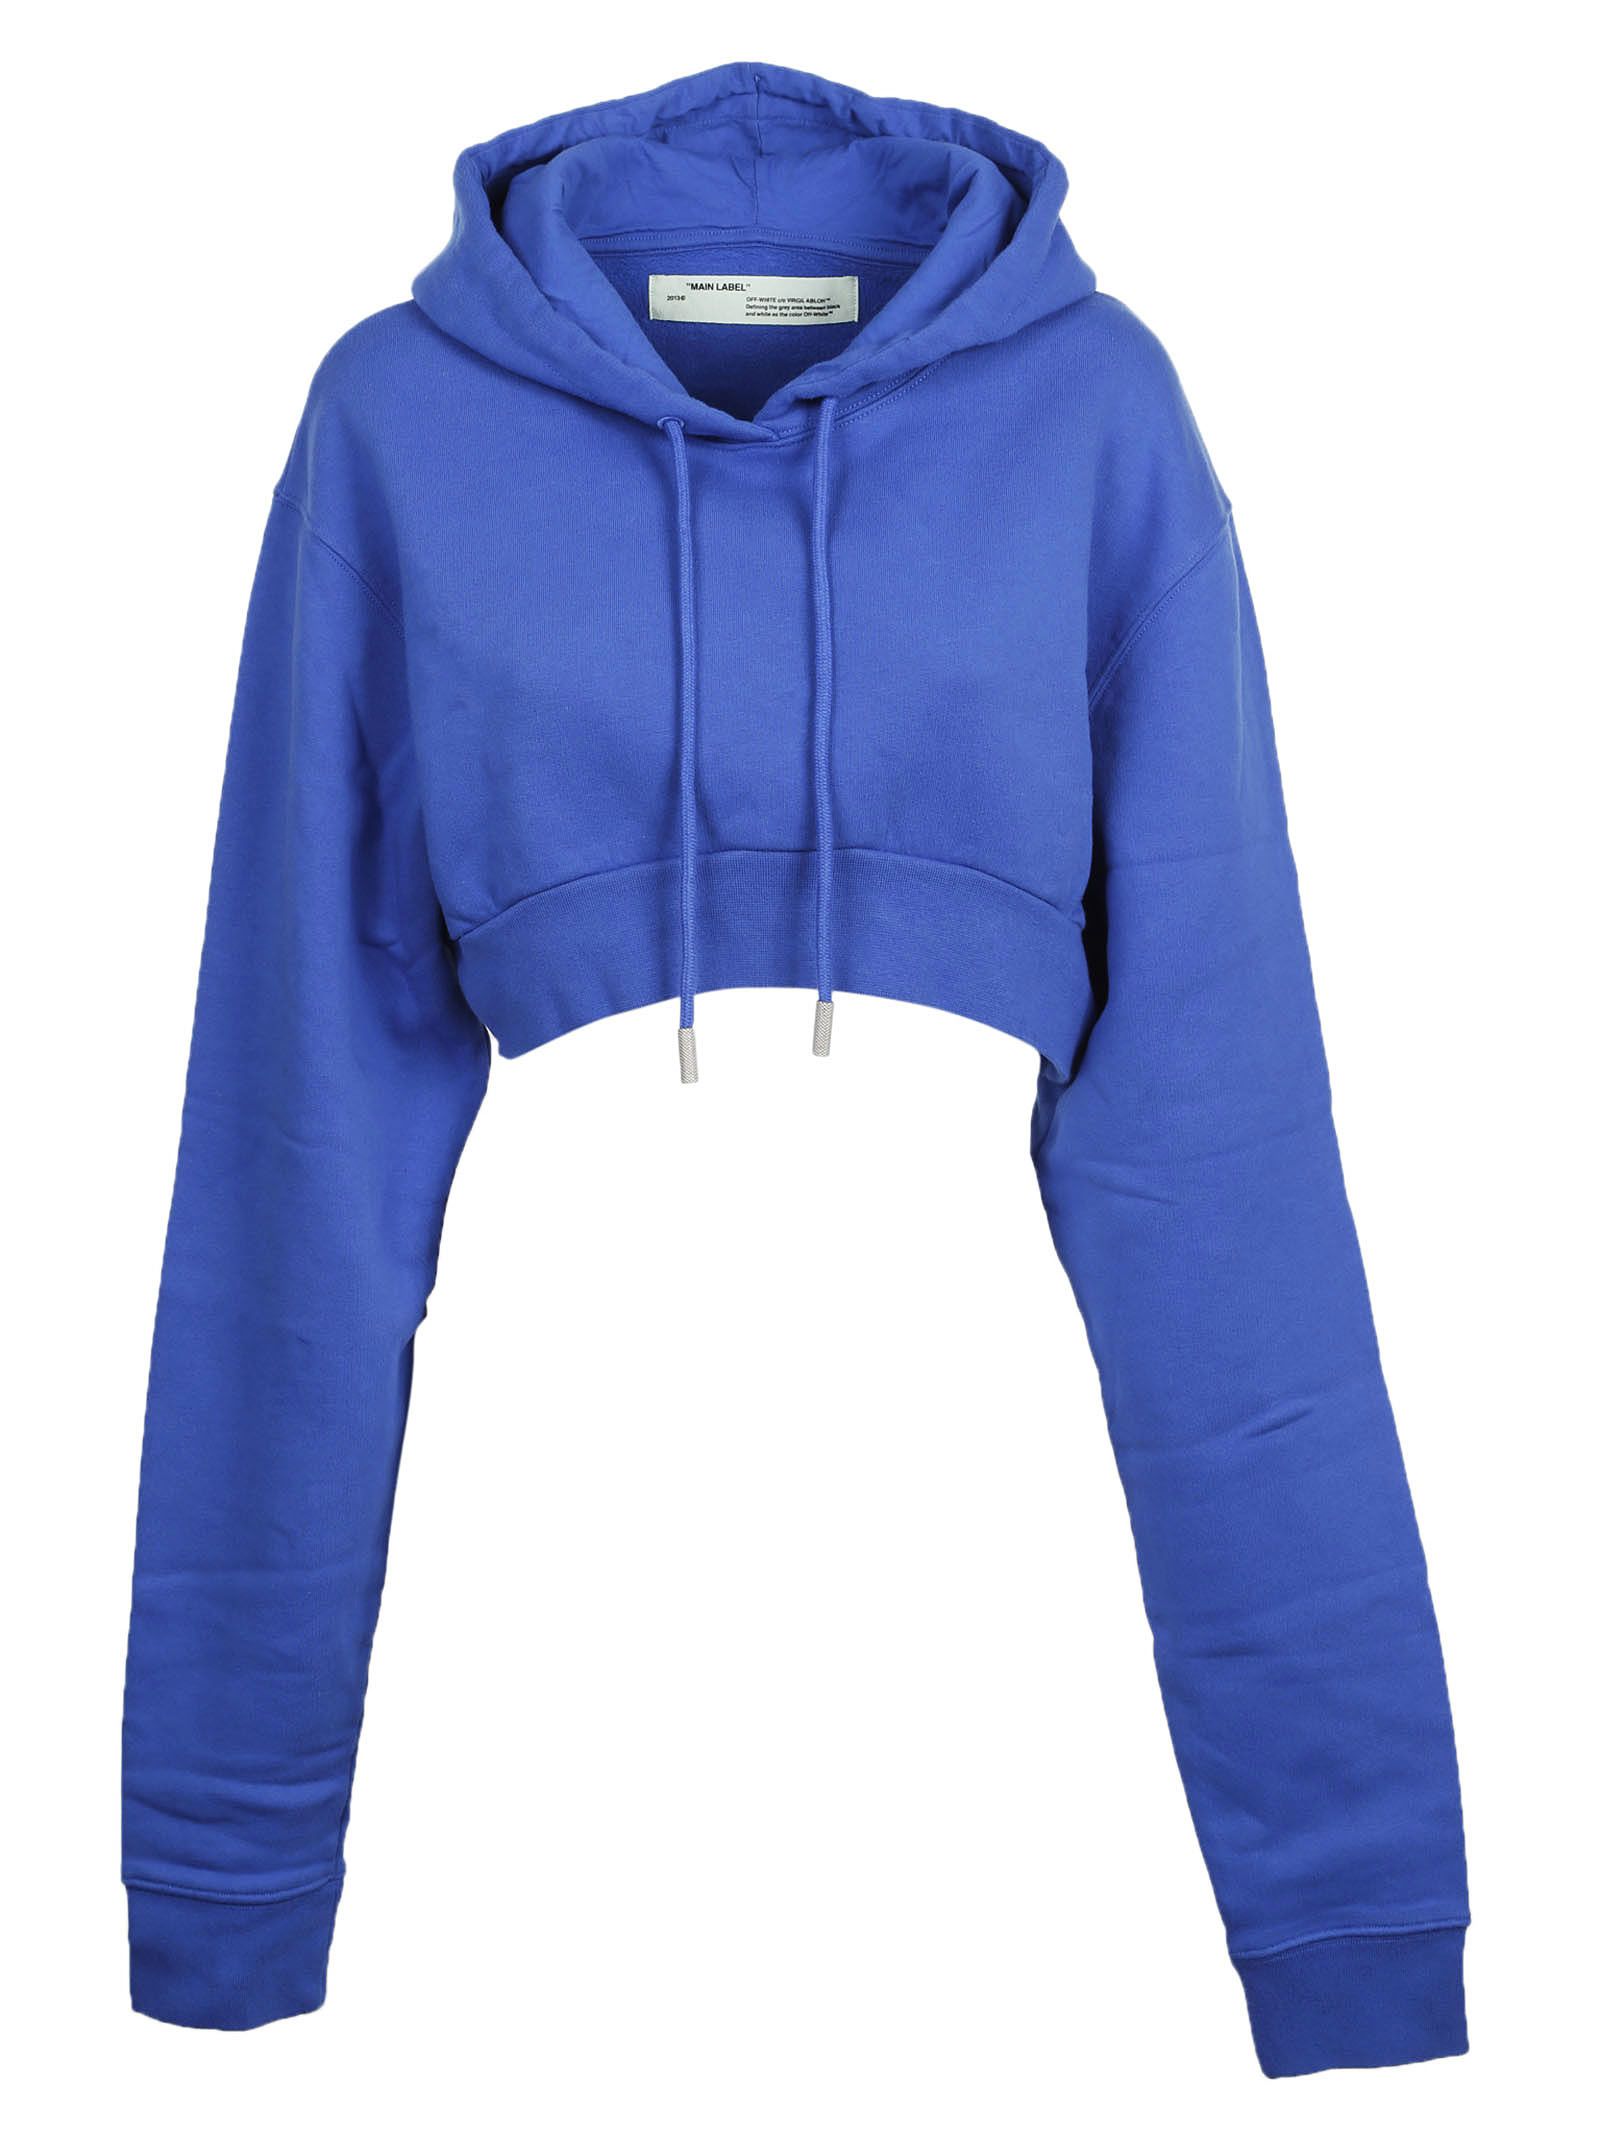 Off-White Simple Crop Blue Hoodie Sweatshirt | ModeSens